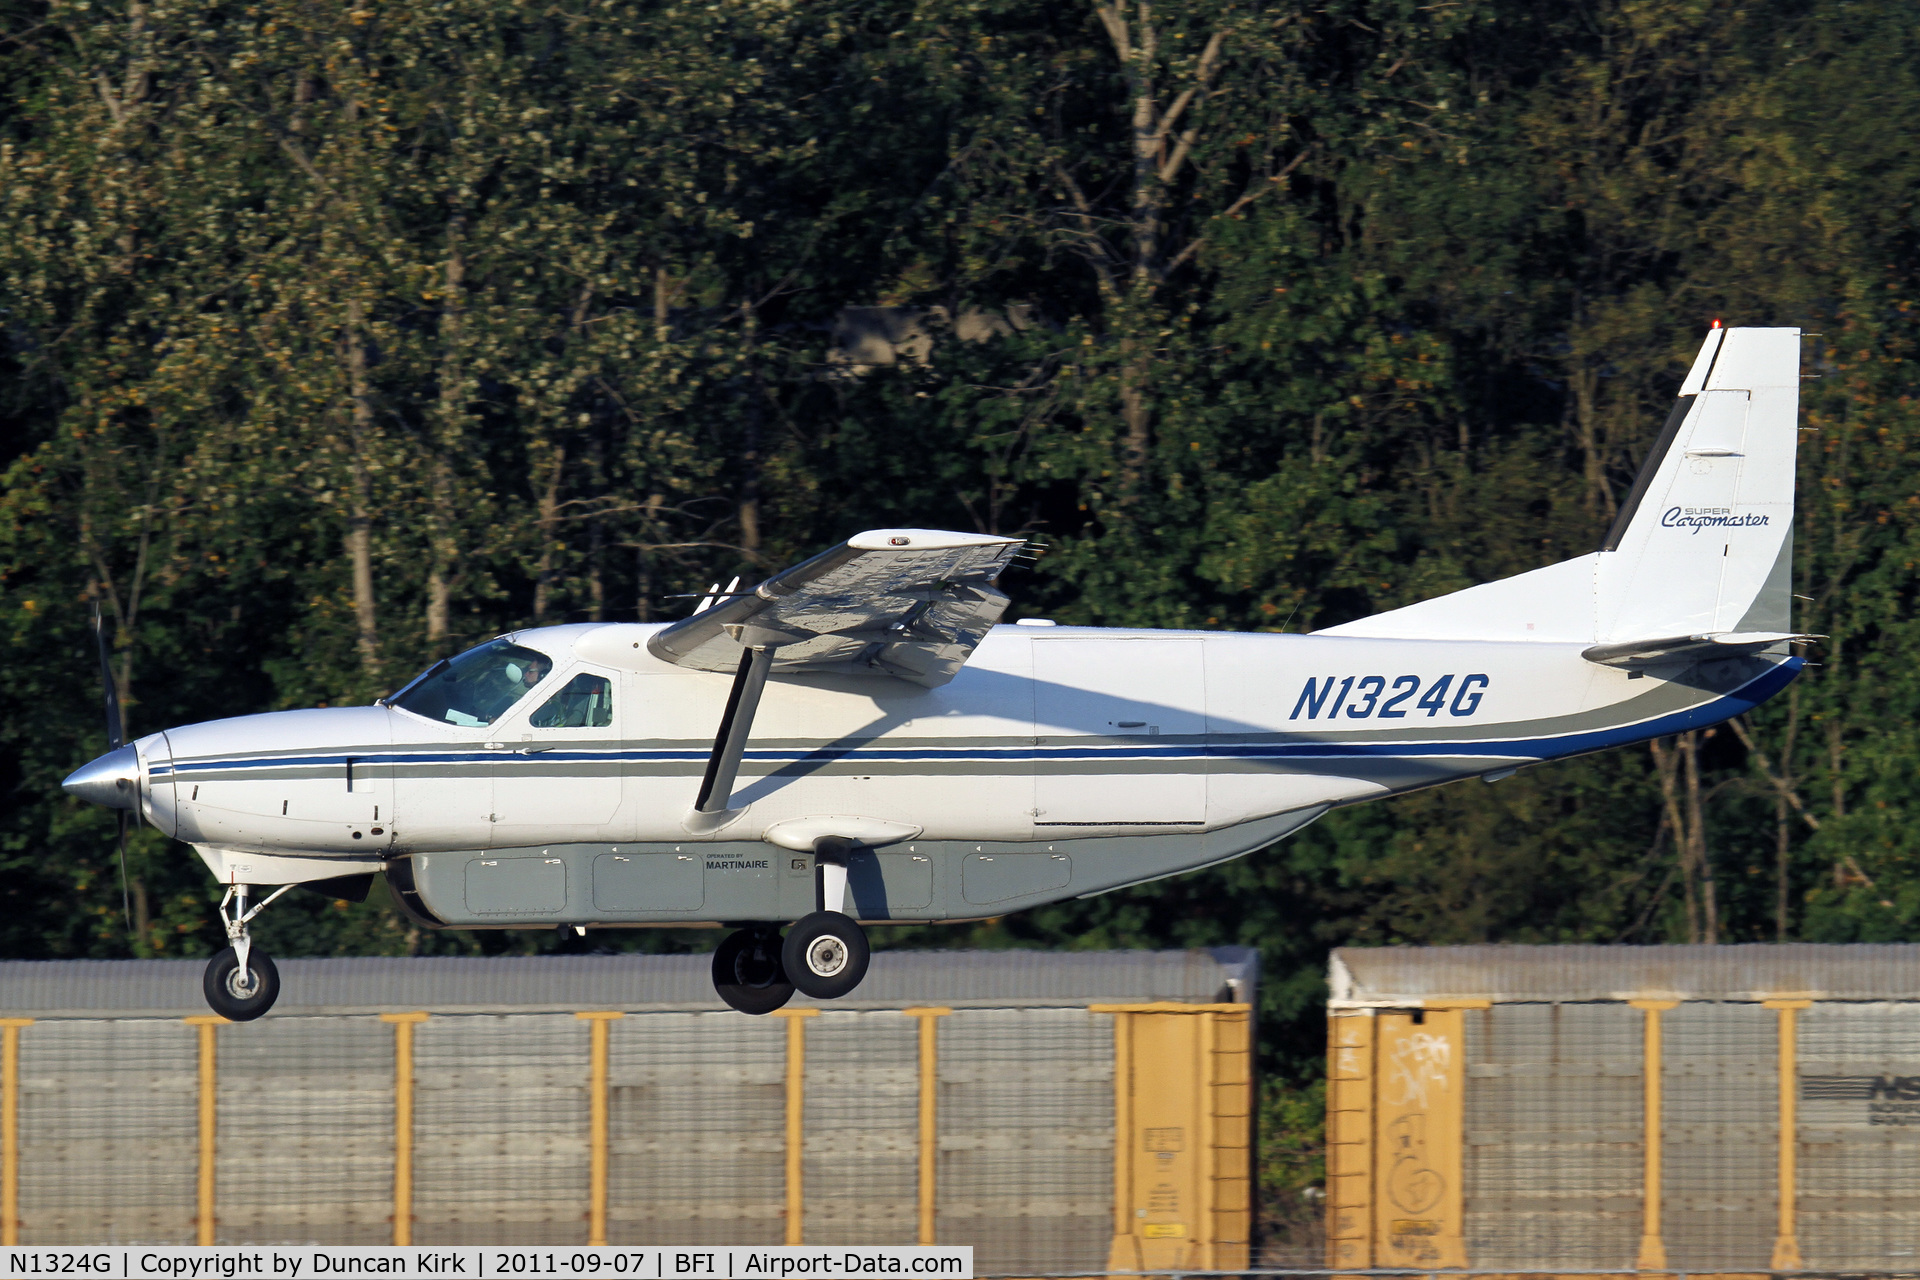 N1324G, 1999 Cessna 208B C/N 208B0777, Caravan on finals